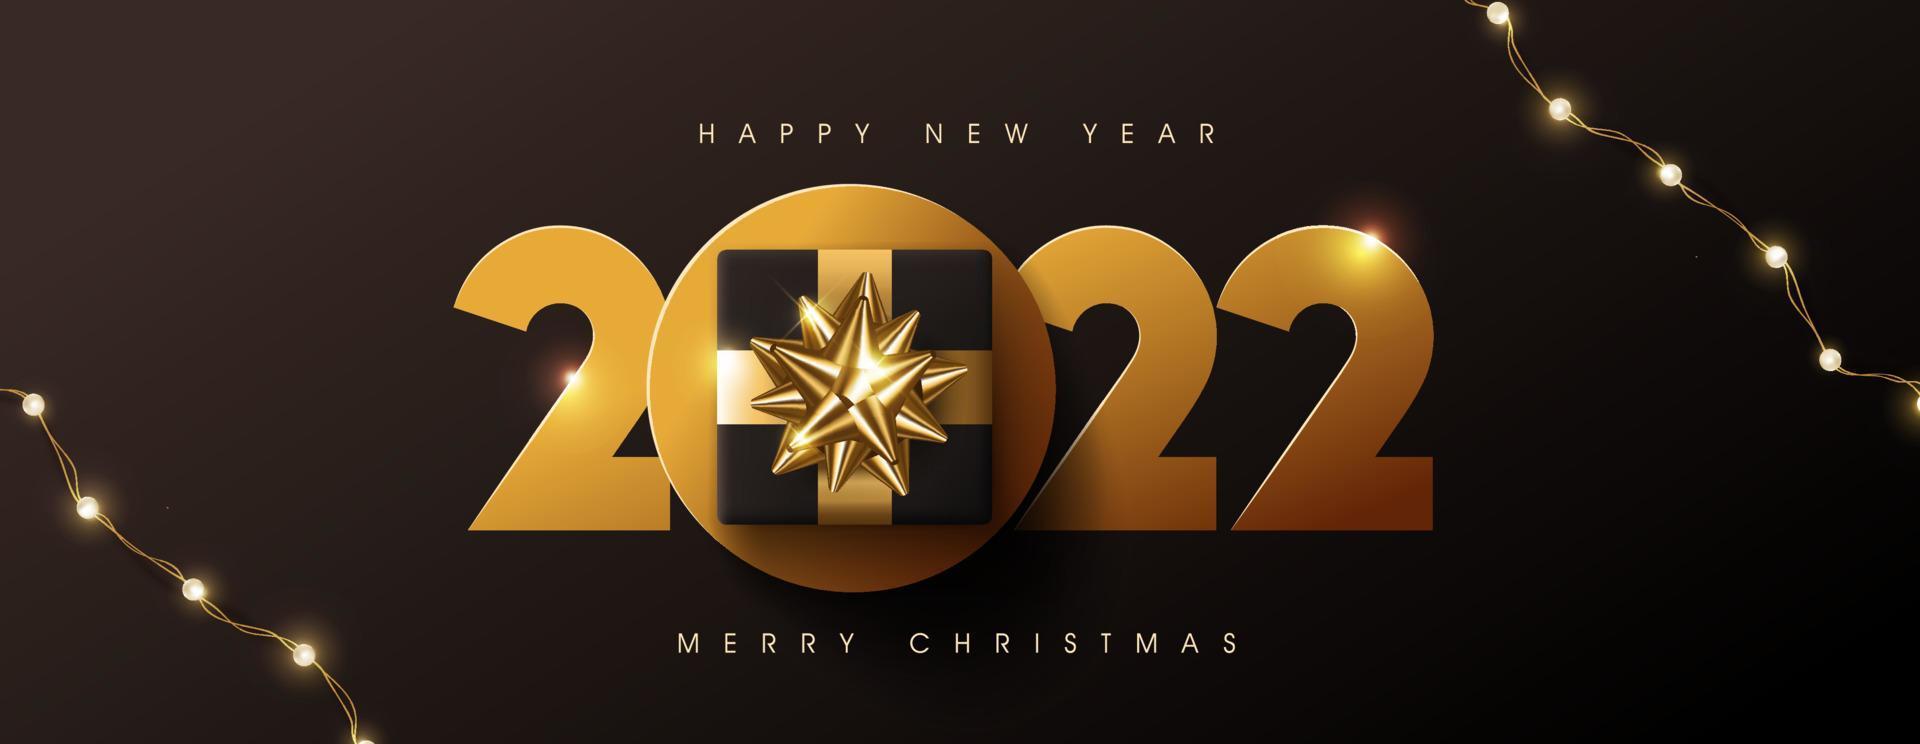 prettige kerstdagen en gelukkig nieuwjaar 2022 tekstontwerp versierd met geschenkdoos vector